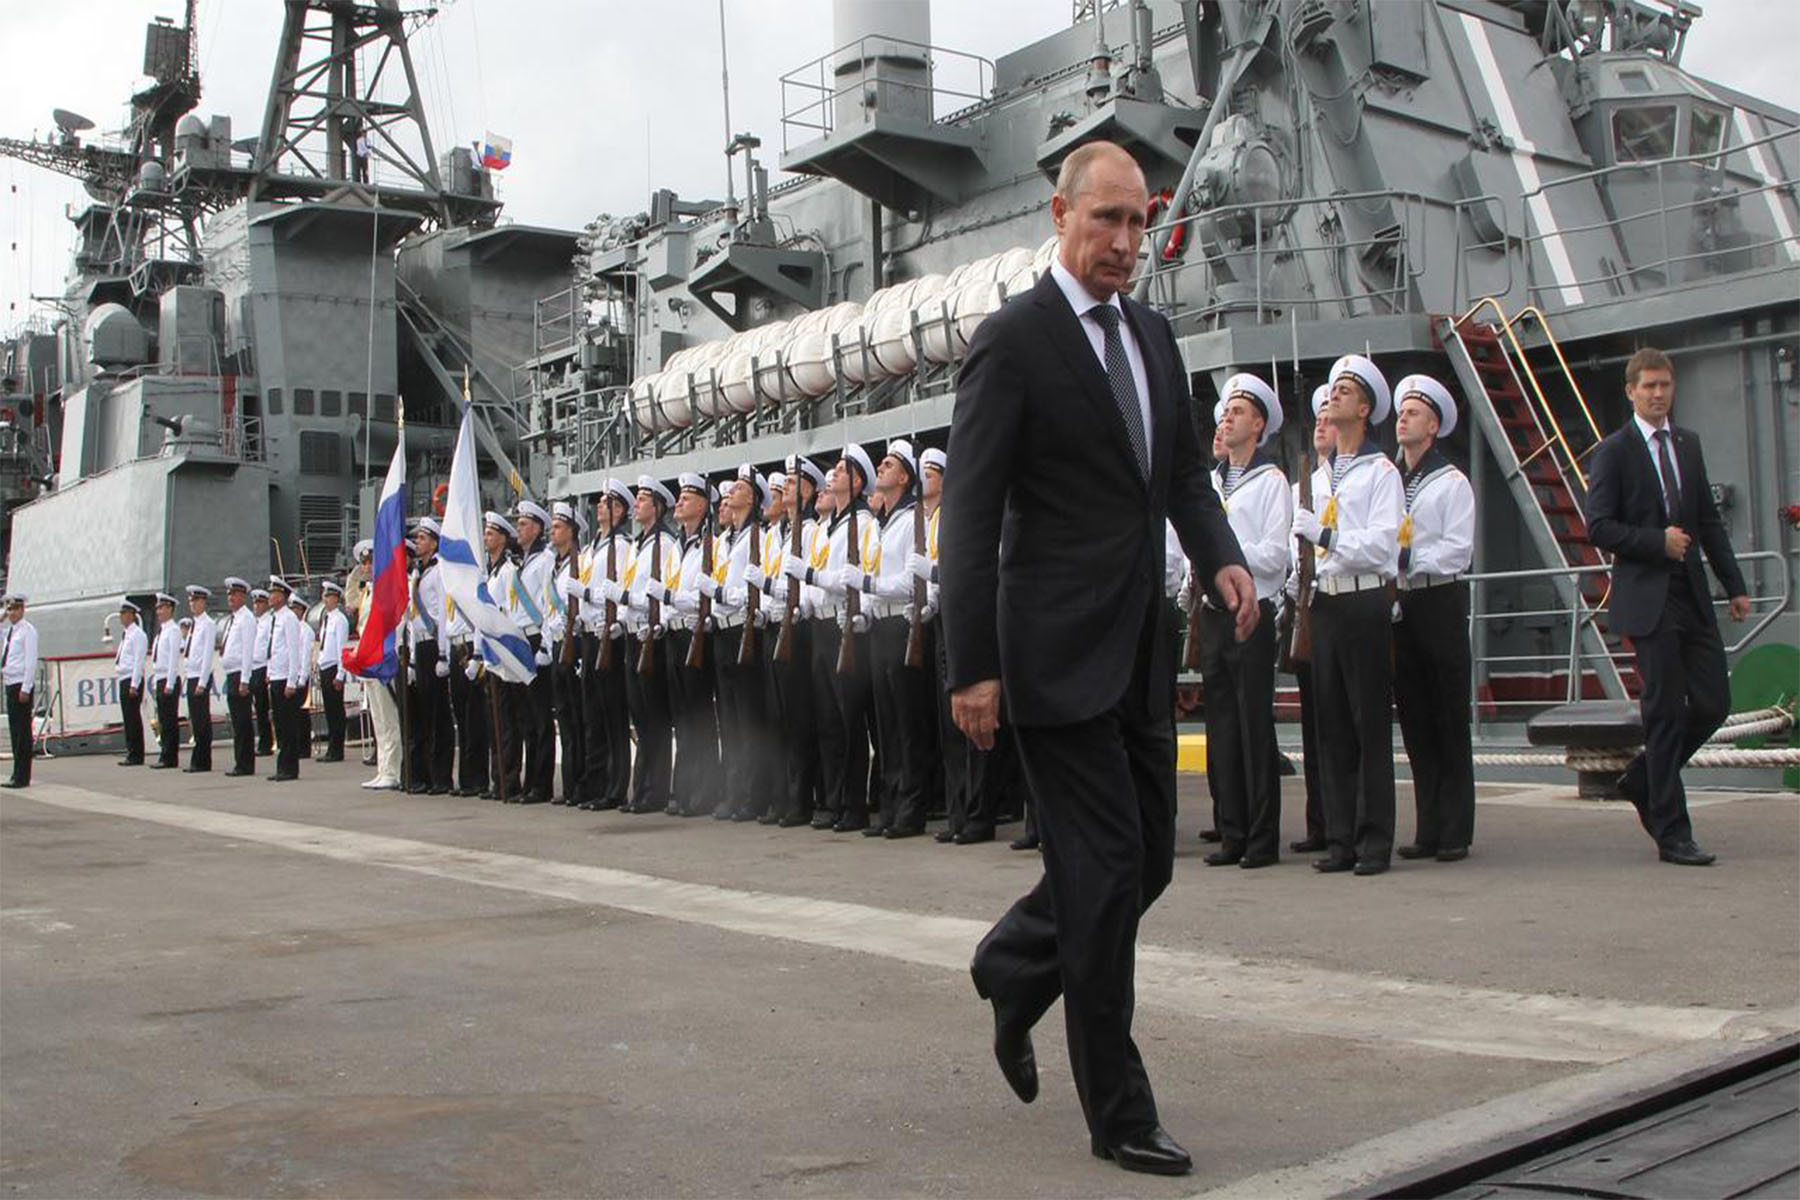 ناوگان دریای سیاه روسیه پس از حملات اوکراین عملکردی غیرفعال دارد